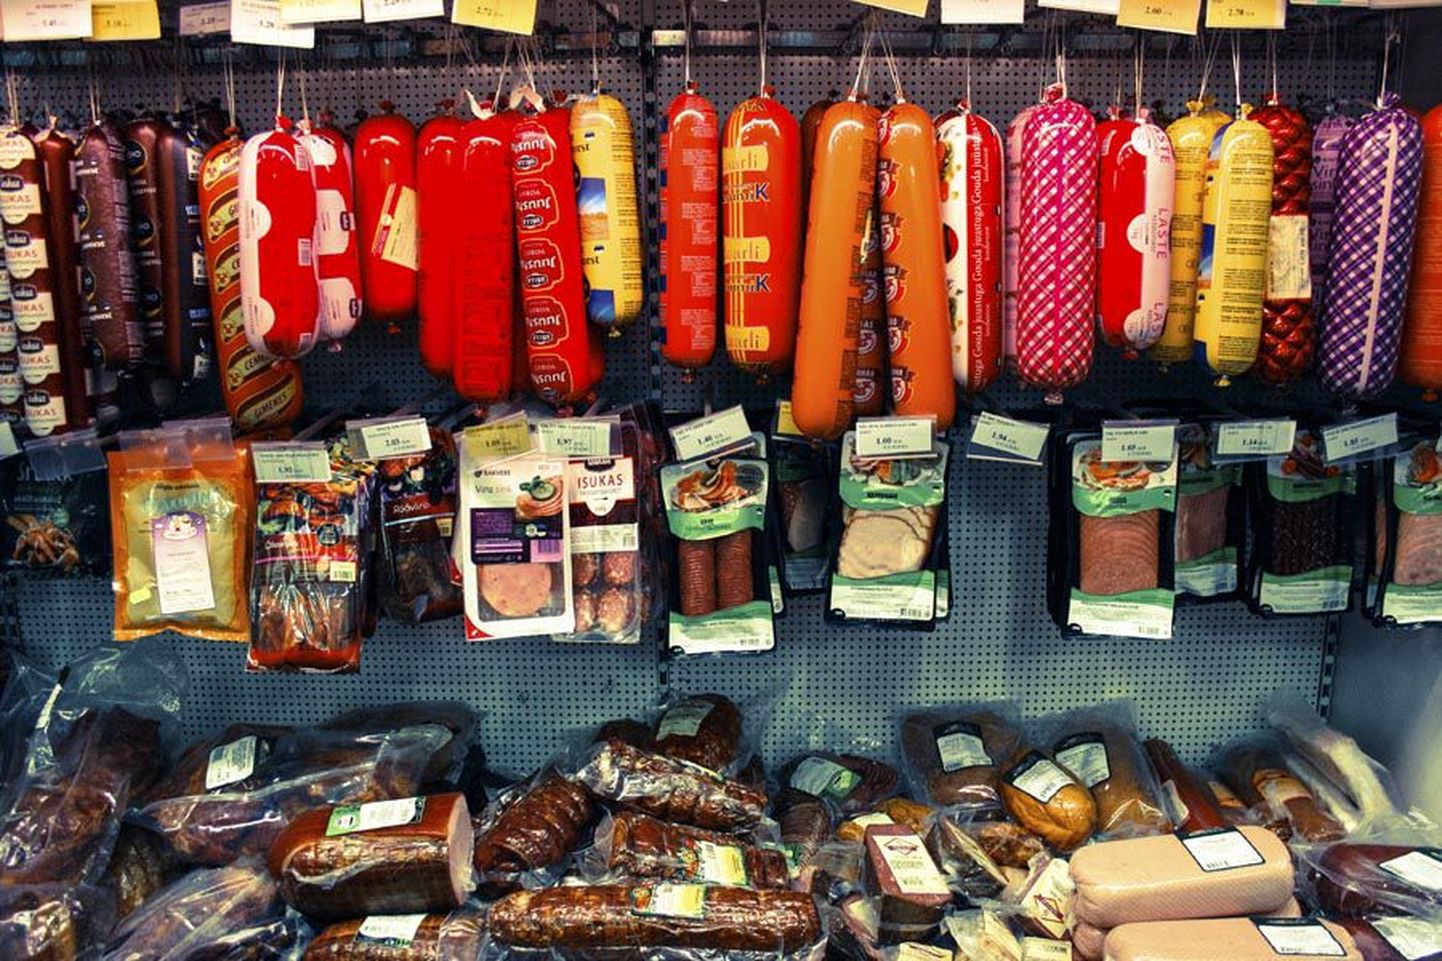 Samal ajal kui liha on Euroopas Venemaa sanktsioonide tõttu odavnenud, on lihatoodete hinnad poodides endiseks jäänud. See on aidanud lihatöösturitel paremini teenida.